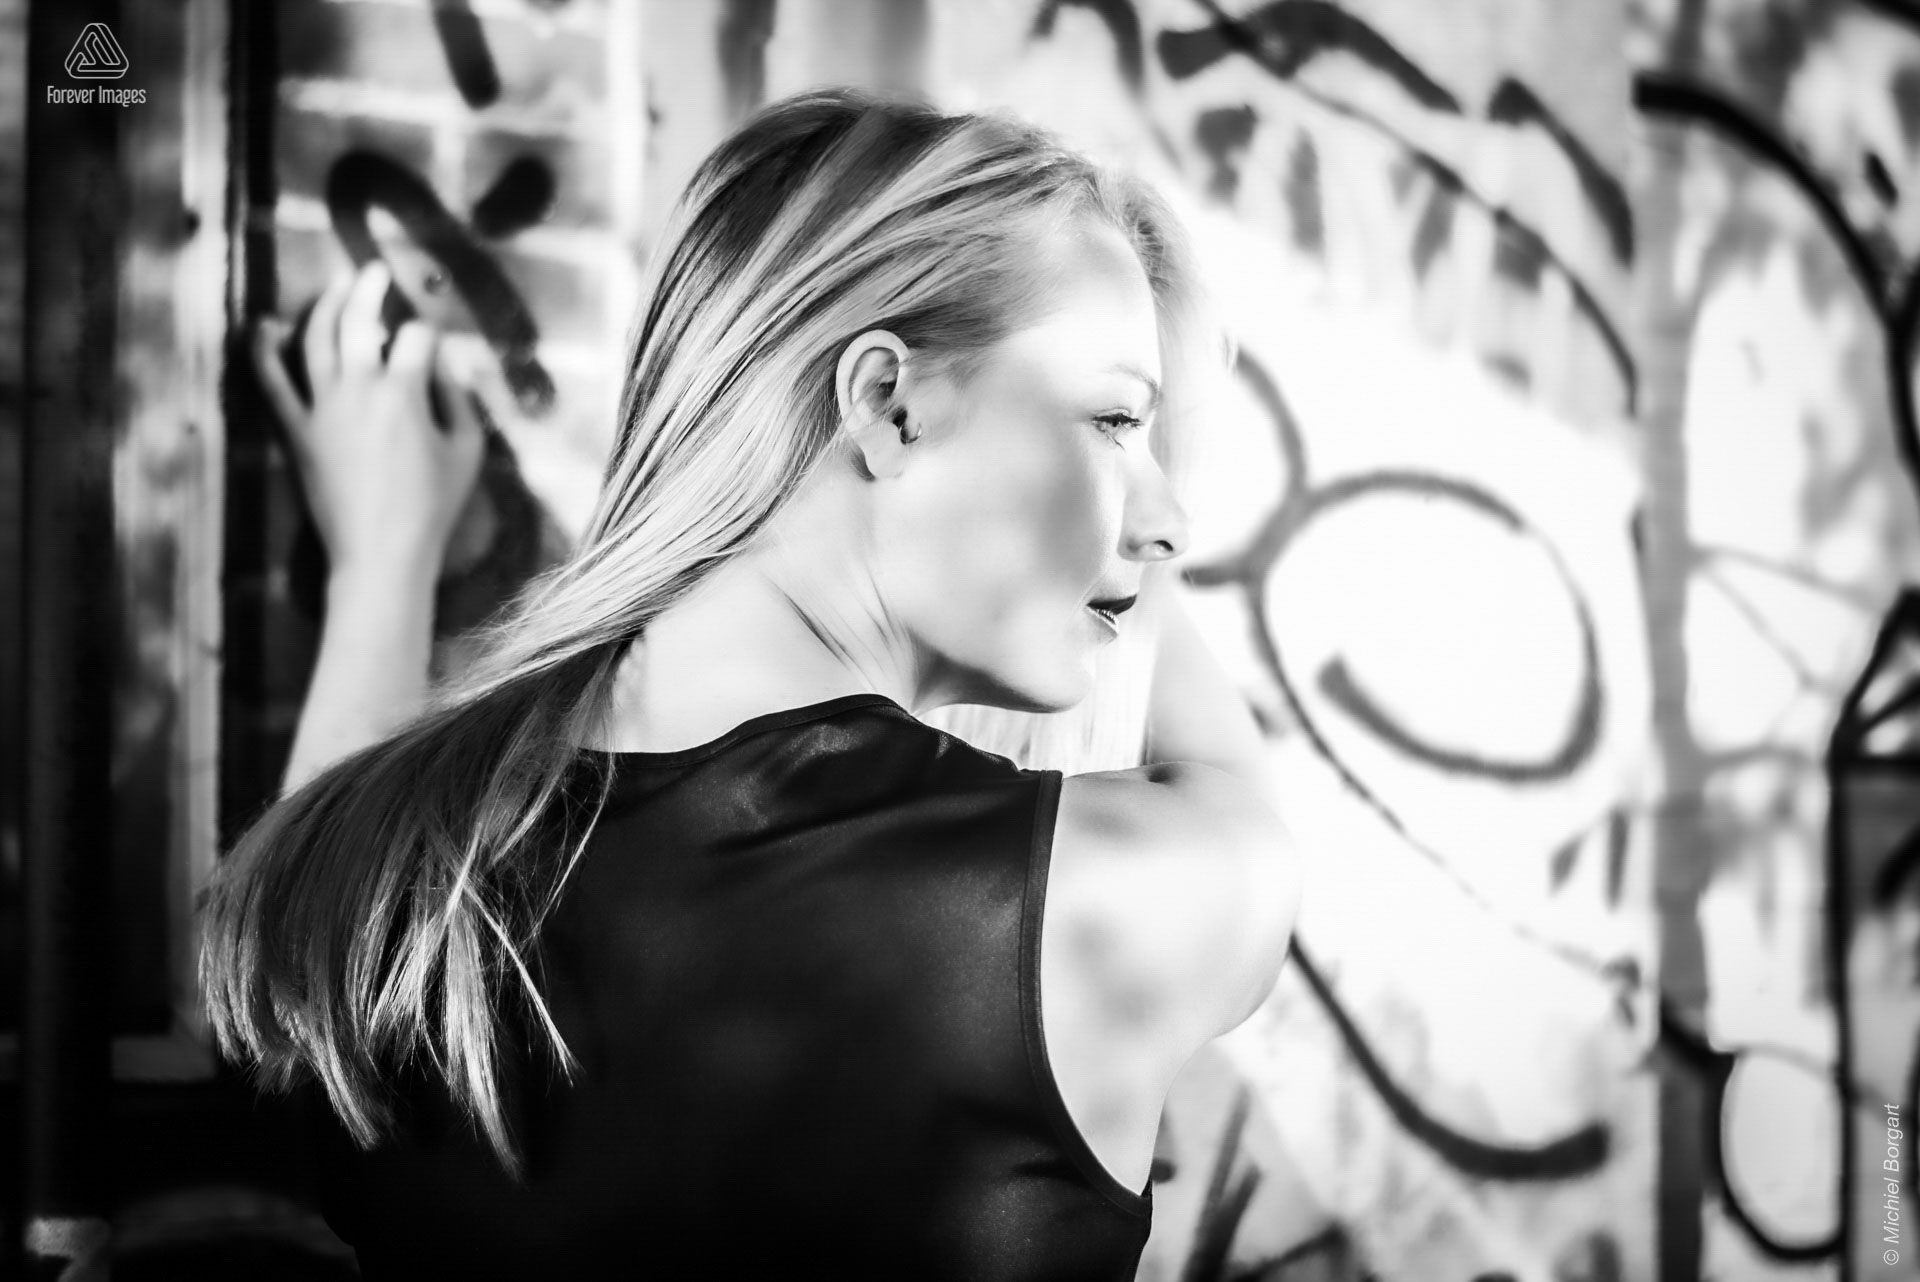 Portretfoto zwart-wit dame tussen graffiti | Heleen Muchachabiker NDSM Werf | Portretfotograaf Michiel Borgart - Forever Images.